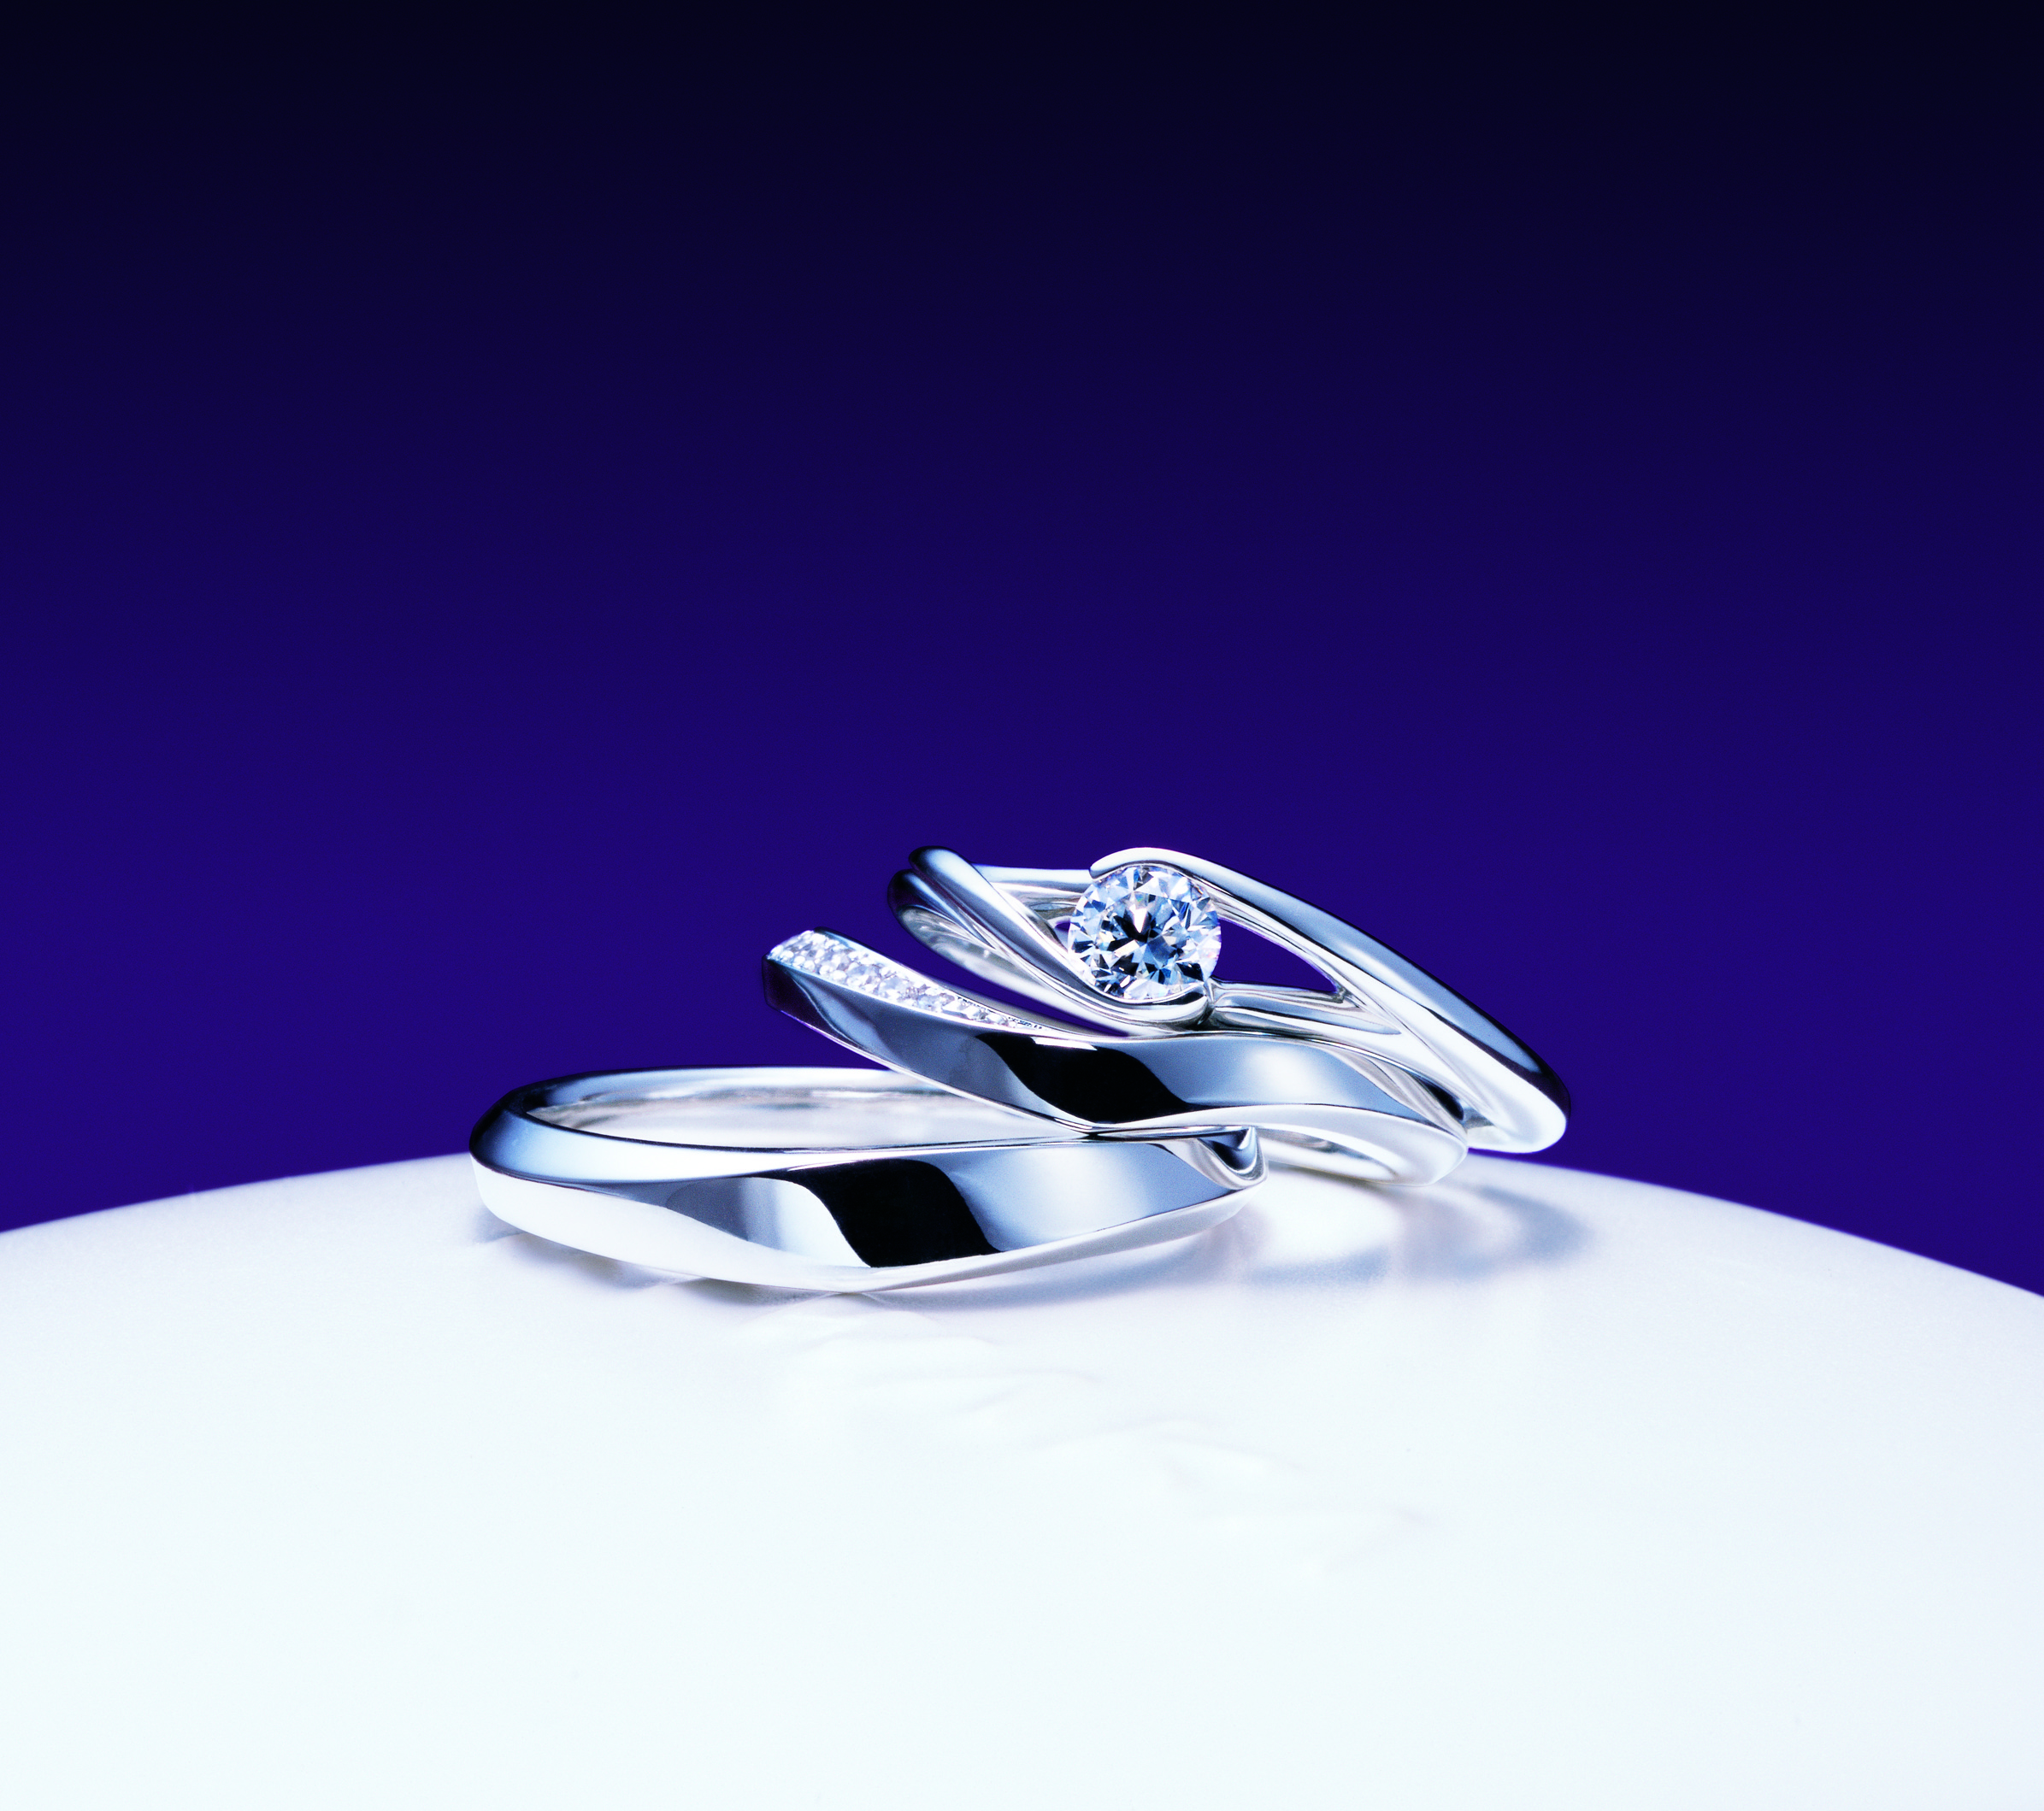 NIWAKAの婚約指輪「望」結婚指輪「水鏡」